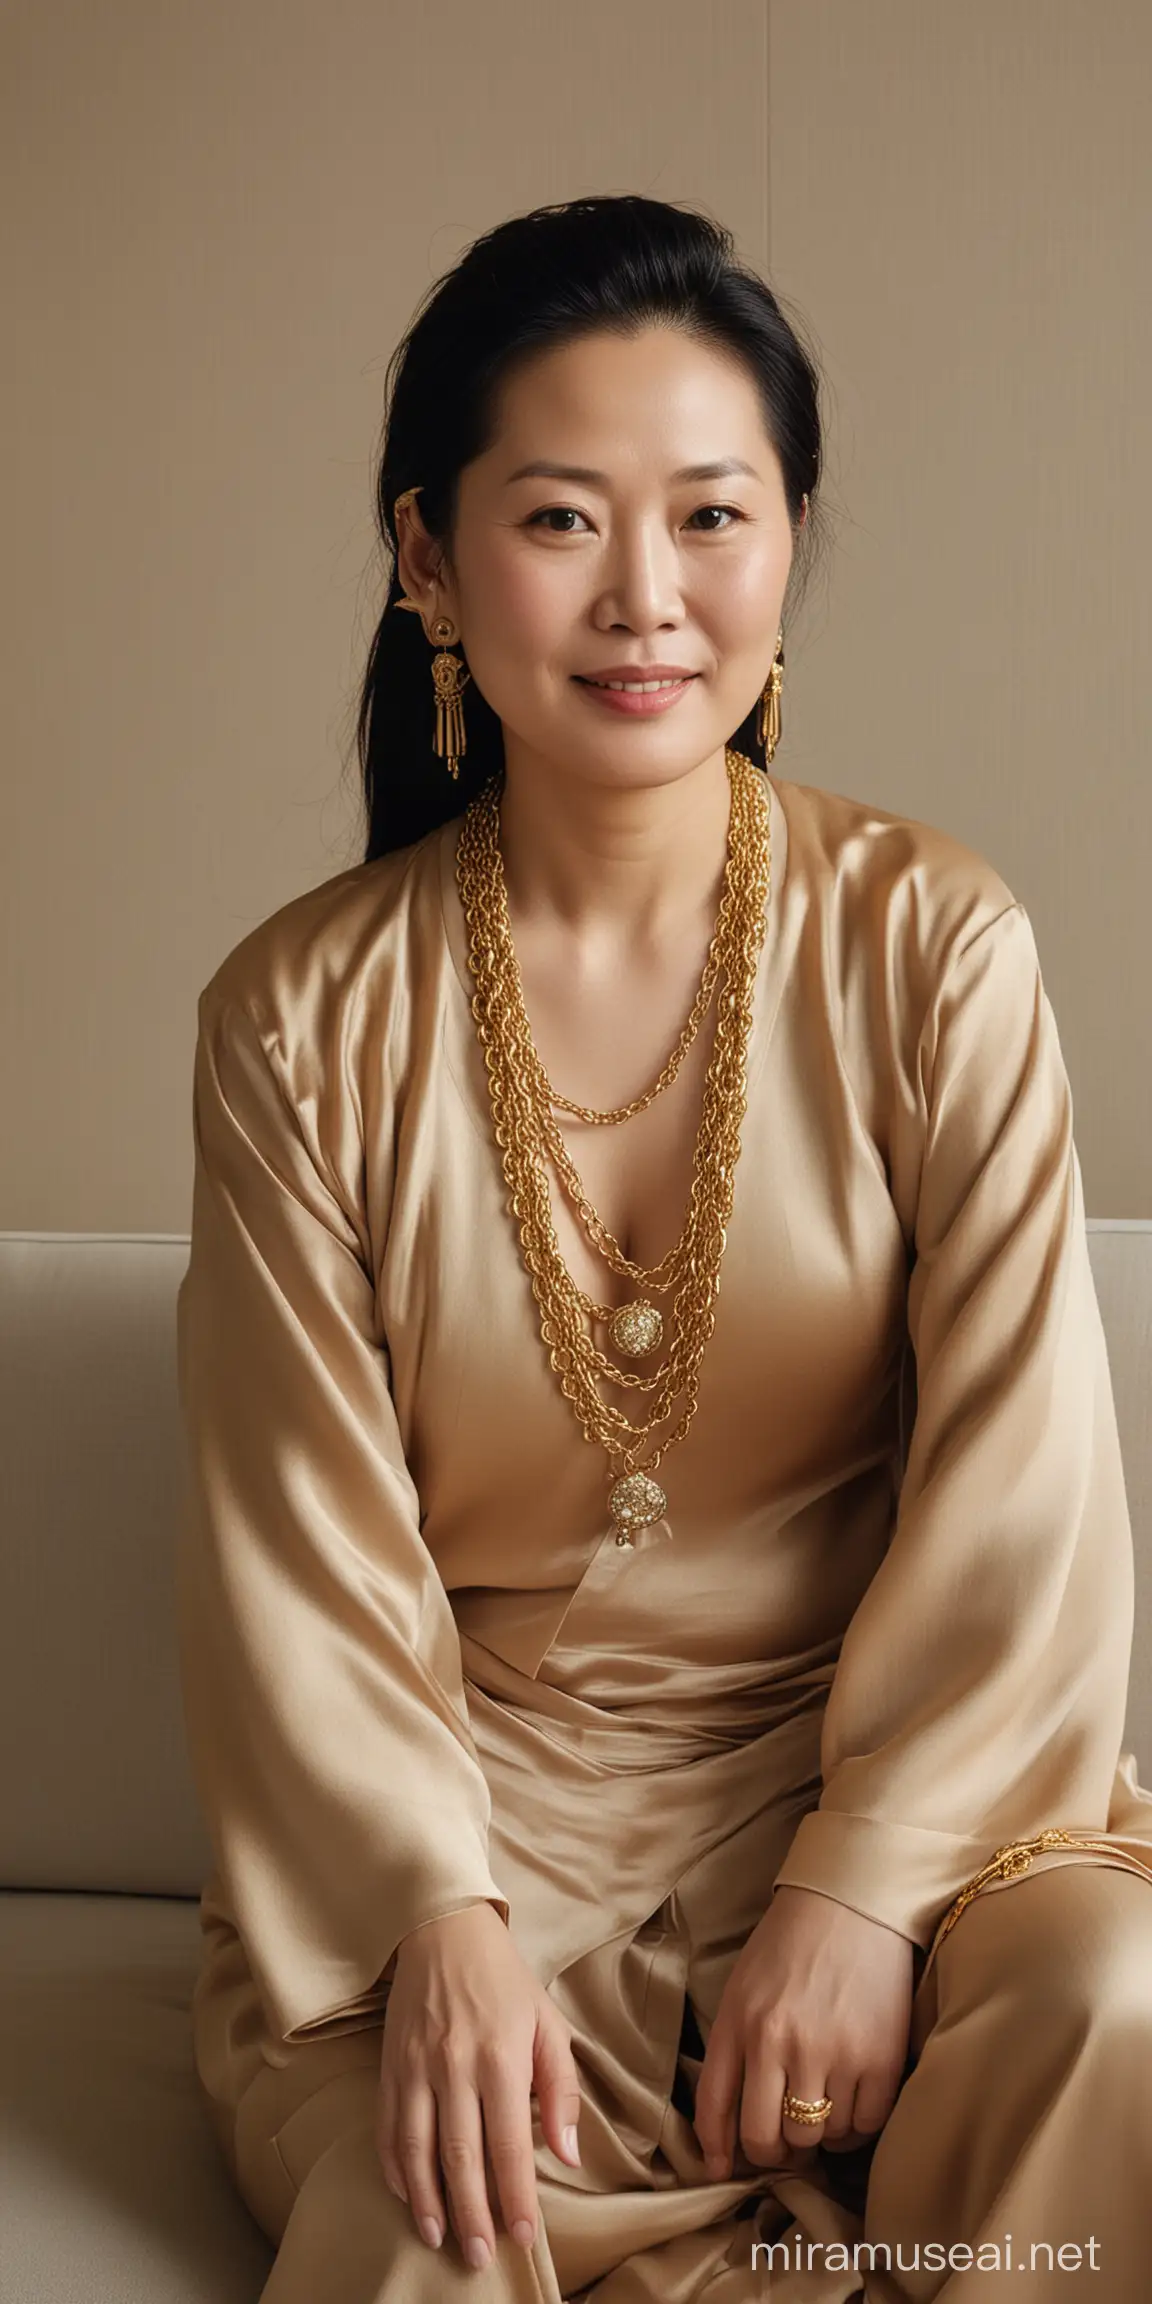 一个50岁中国女人，身材肥胖，满脸横肉，脖子上带着一条很粗的黄金项链。穿着高端的衣服，做在沙发上。